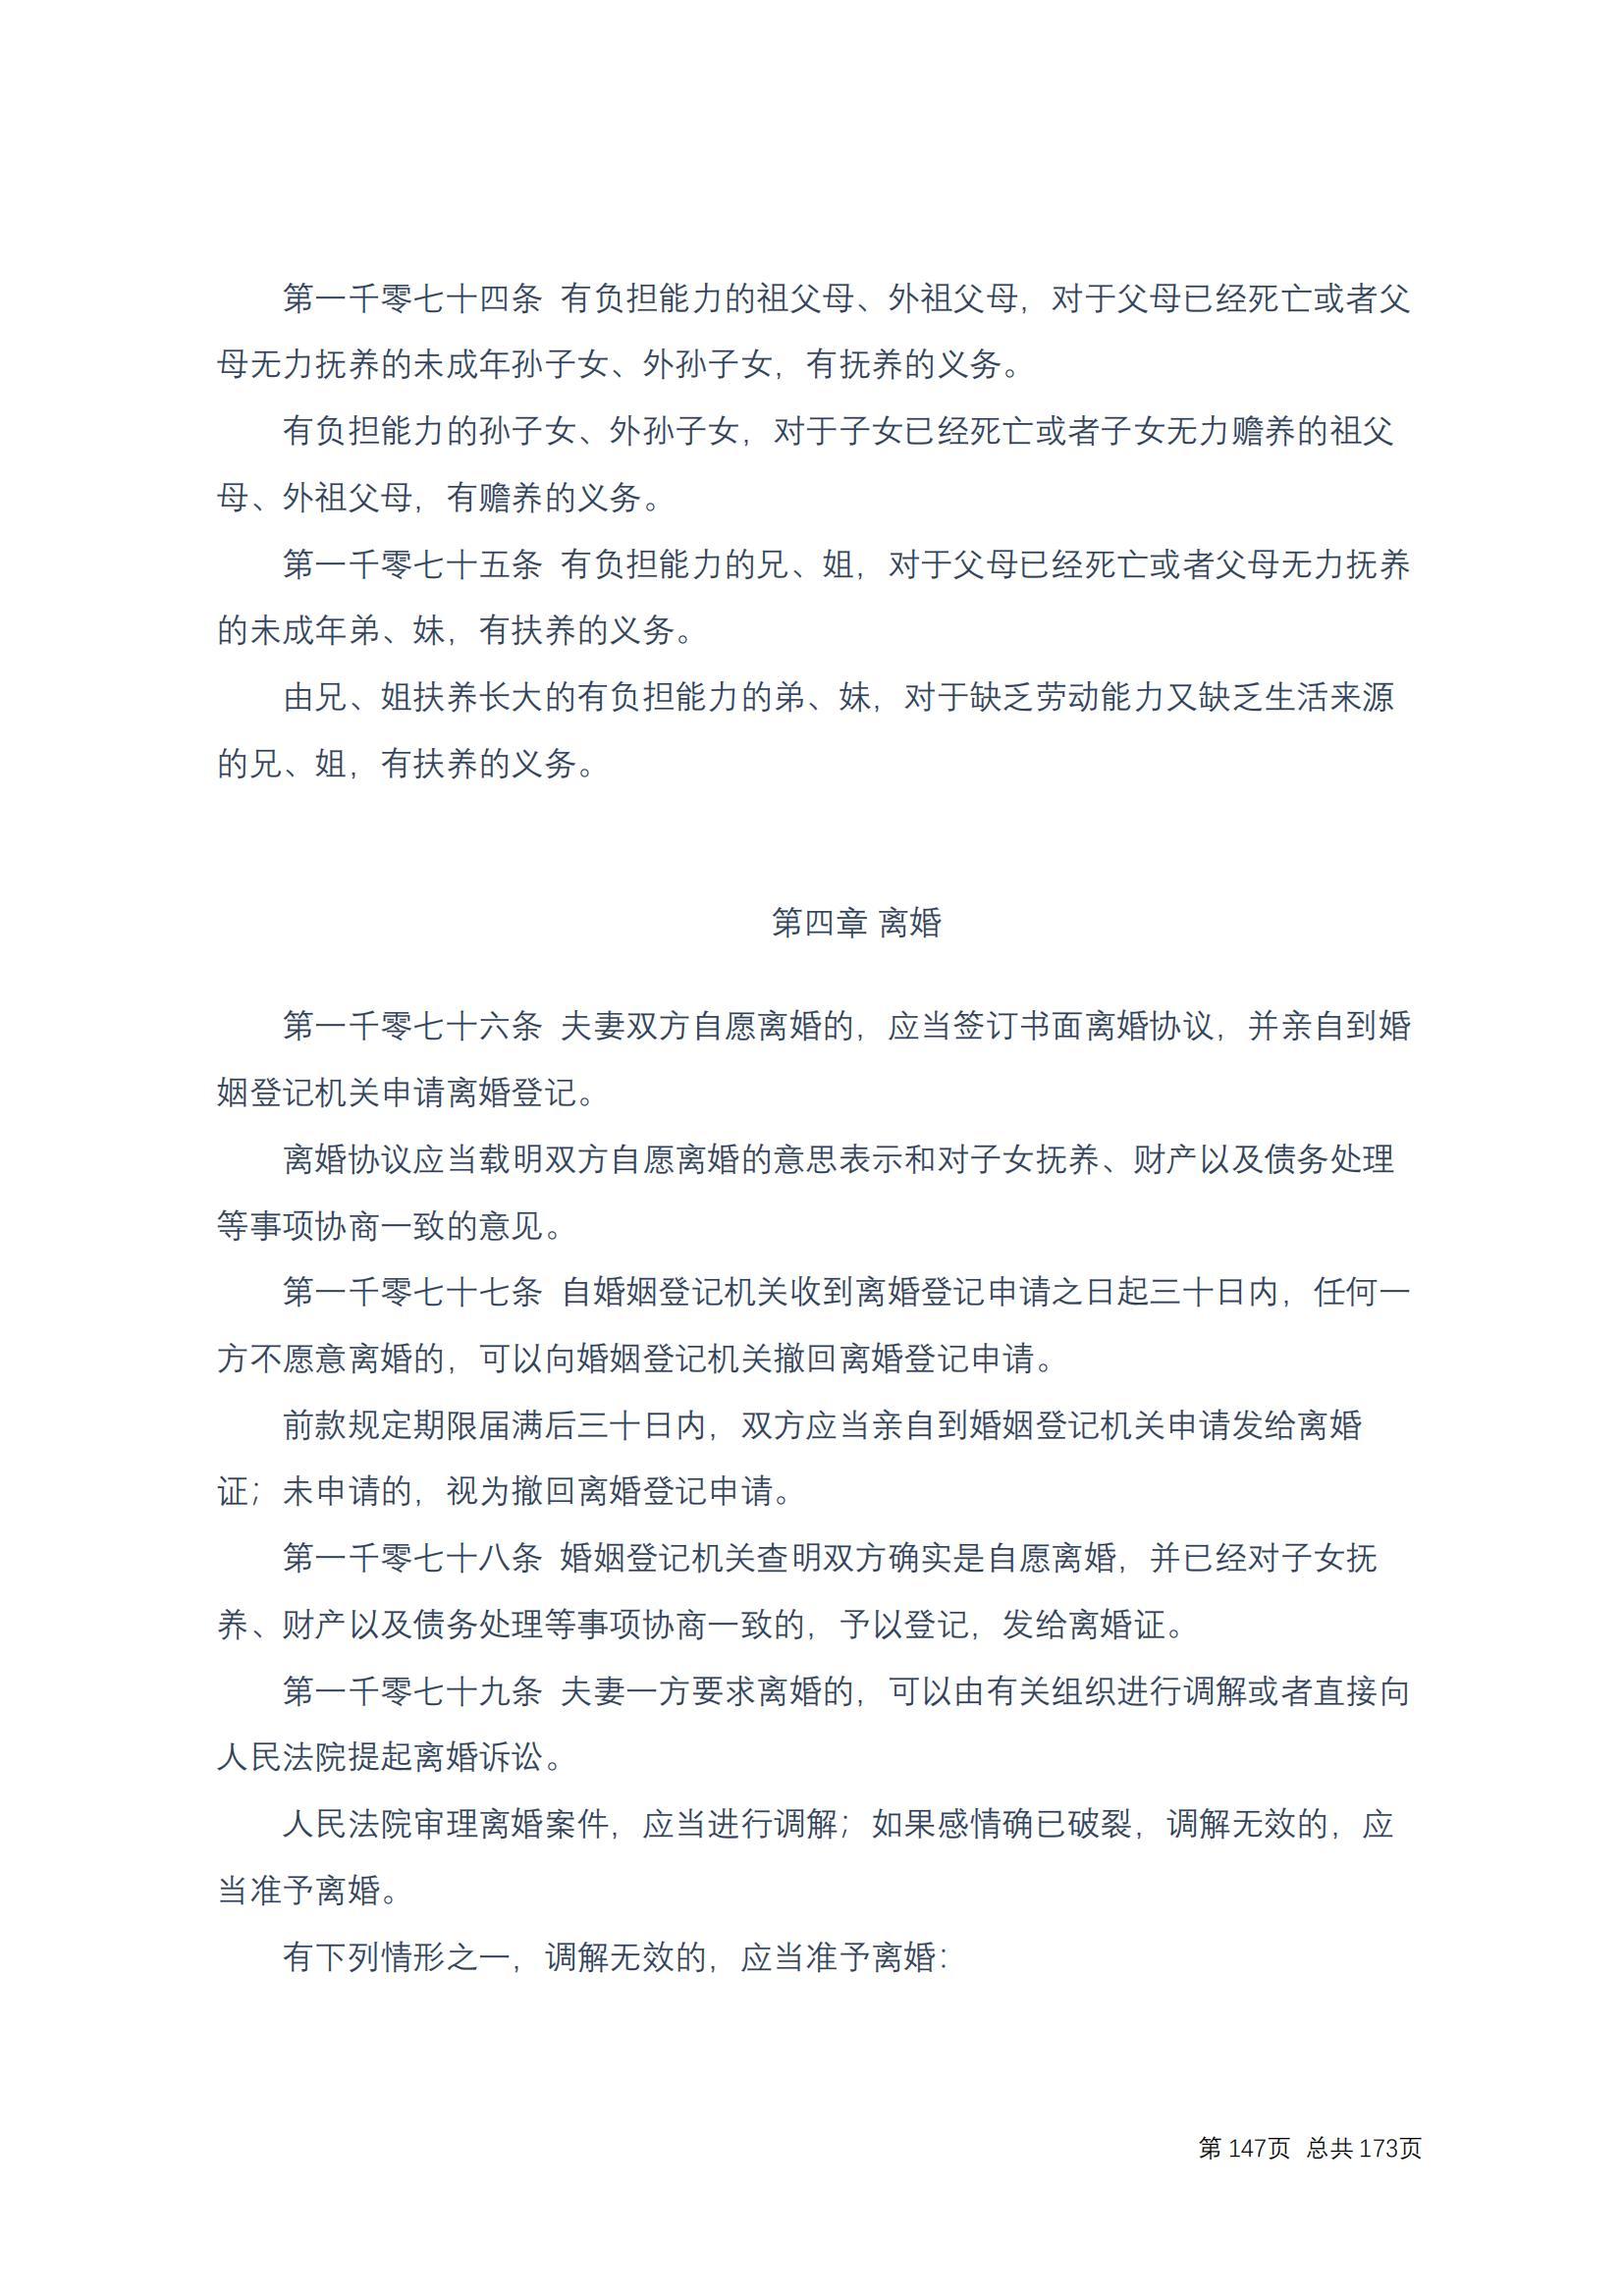 中华人民共和国民法典 修改过_146